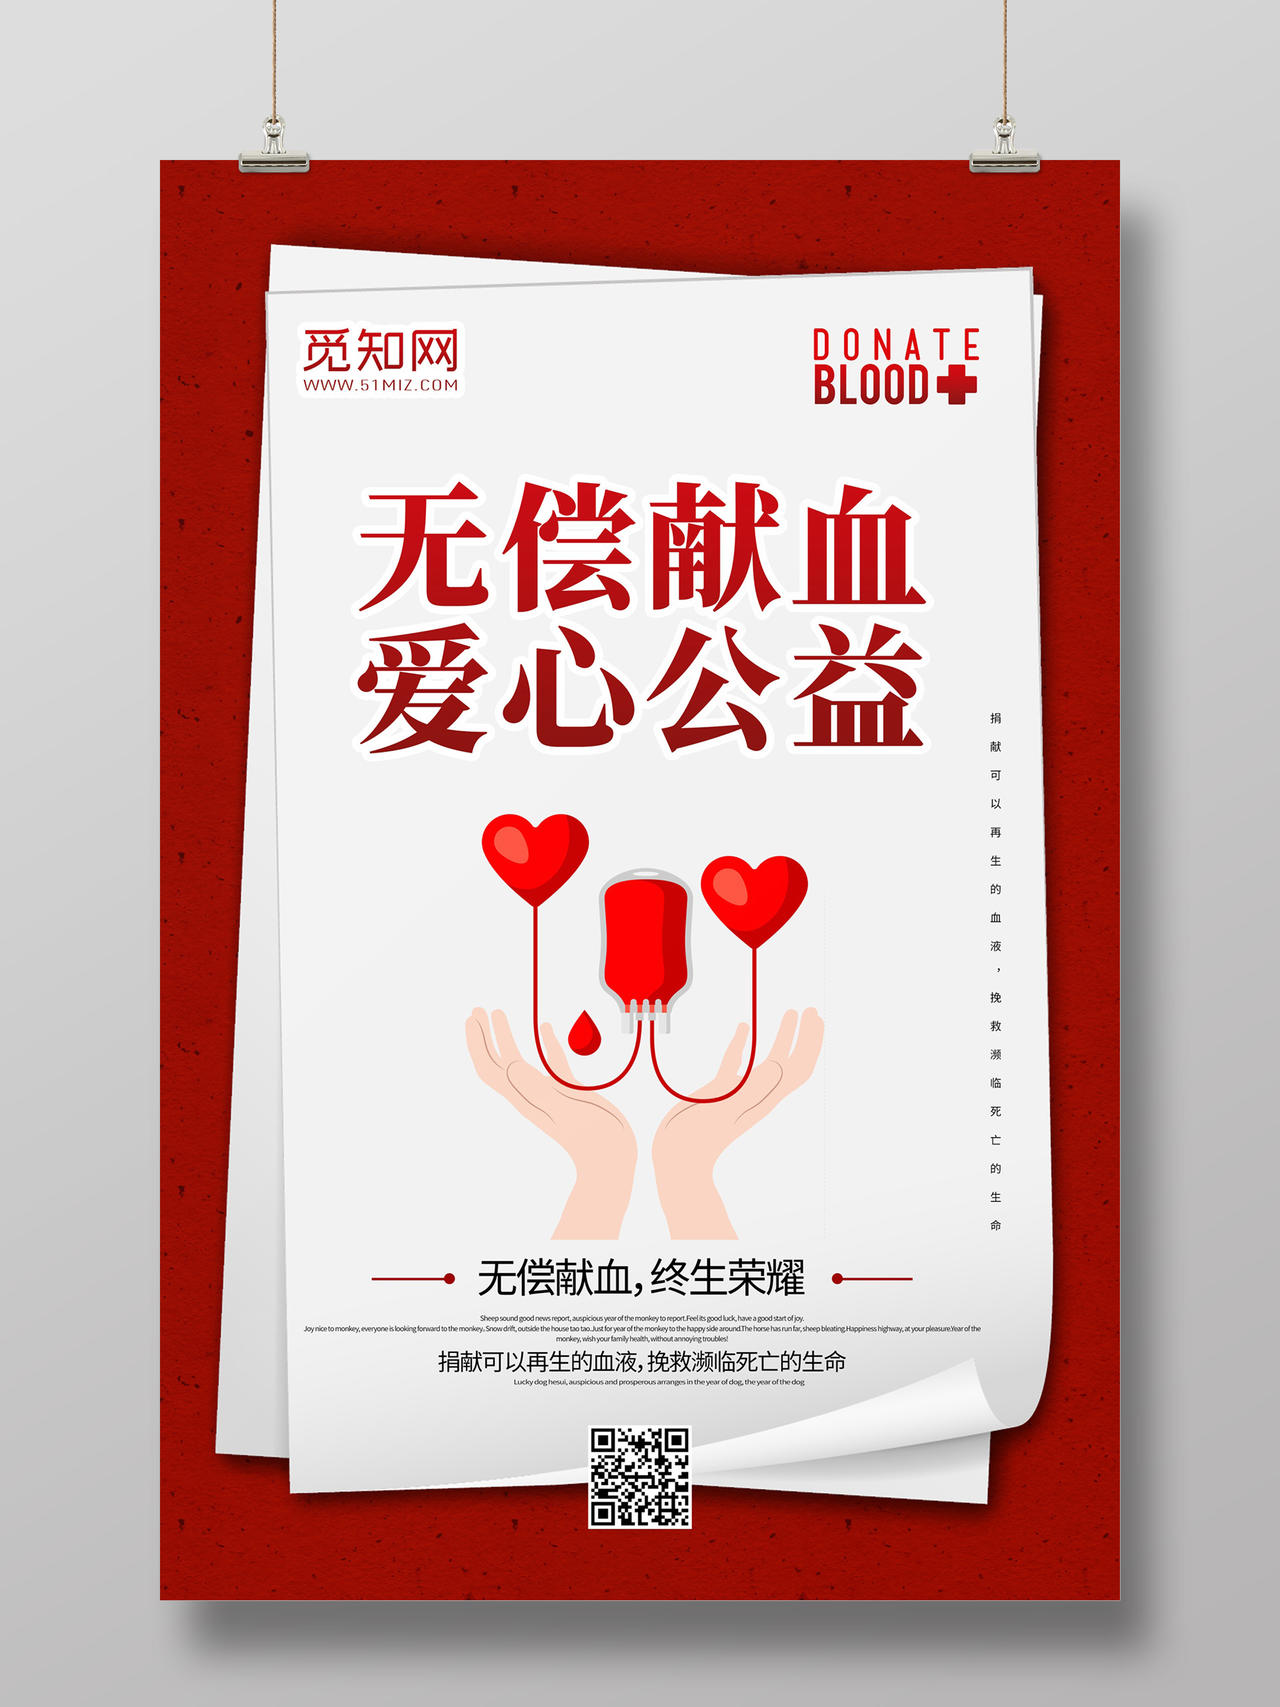 简约大气红色背景纸张翻页无偿献血爱心公益海报设计